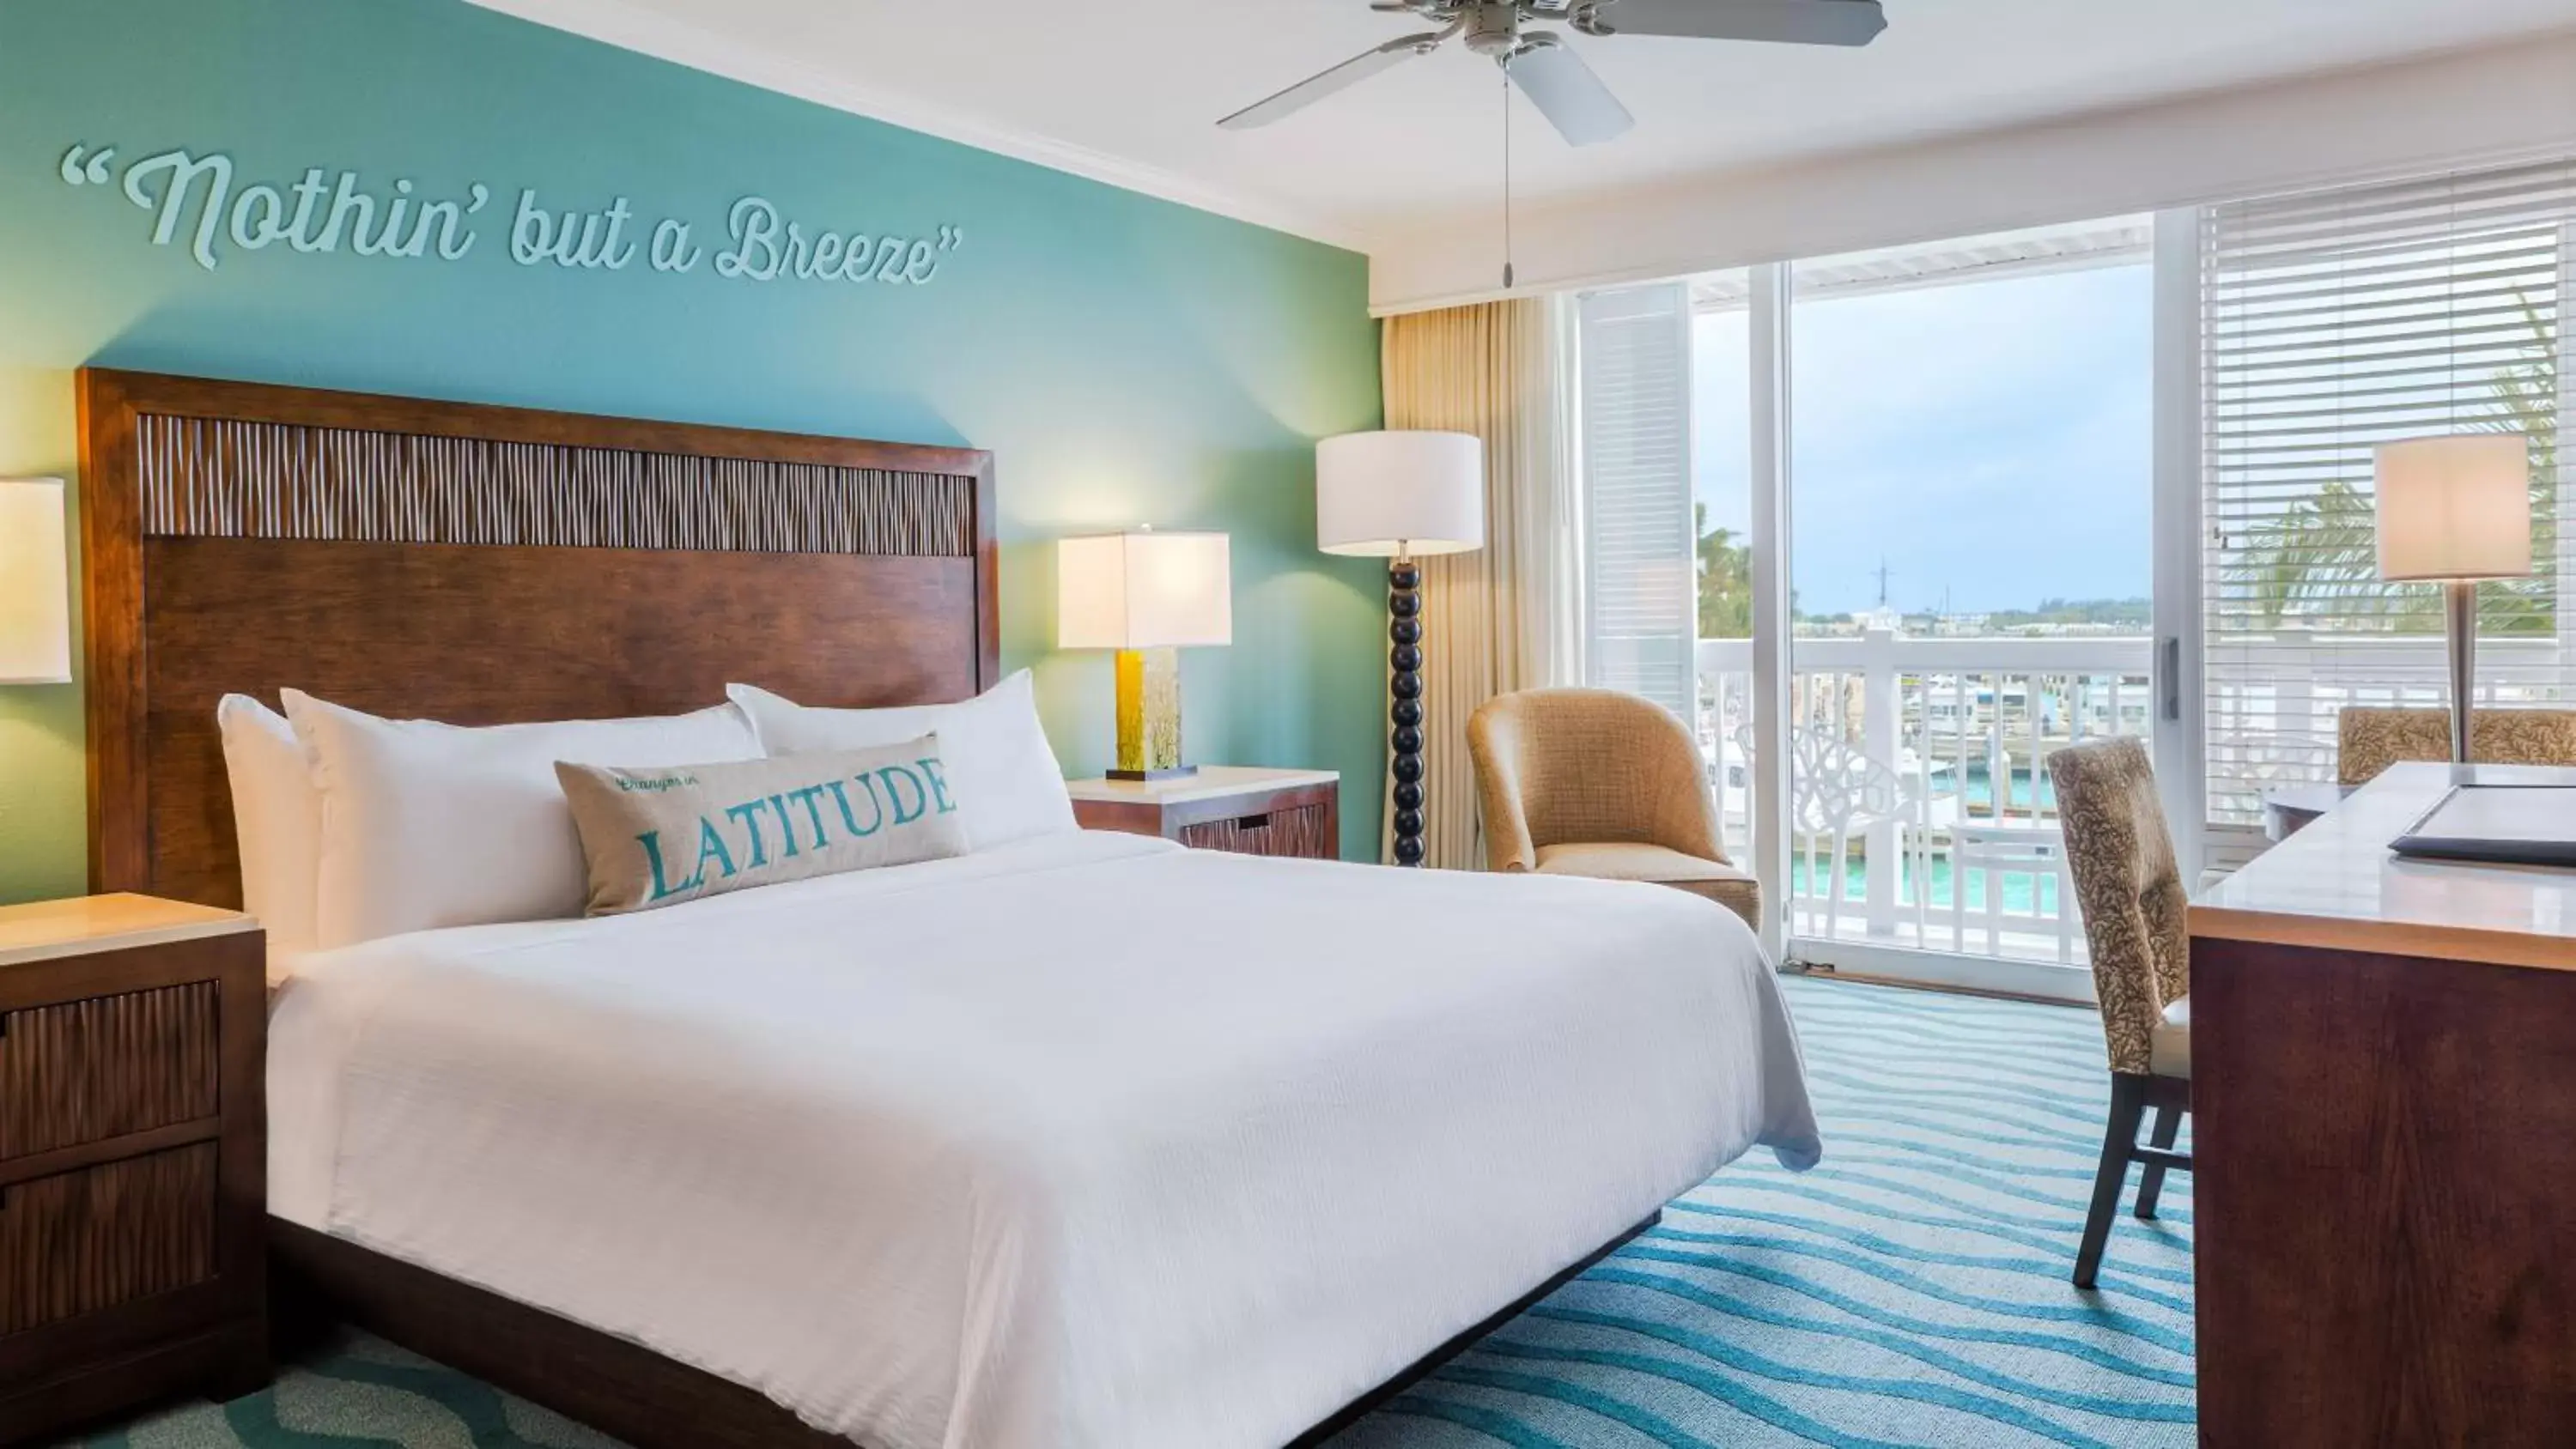 Bedroom in Opal Key Resort & Marina